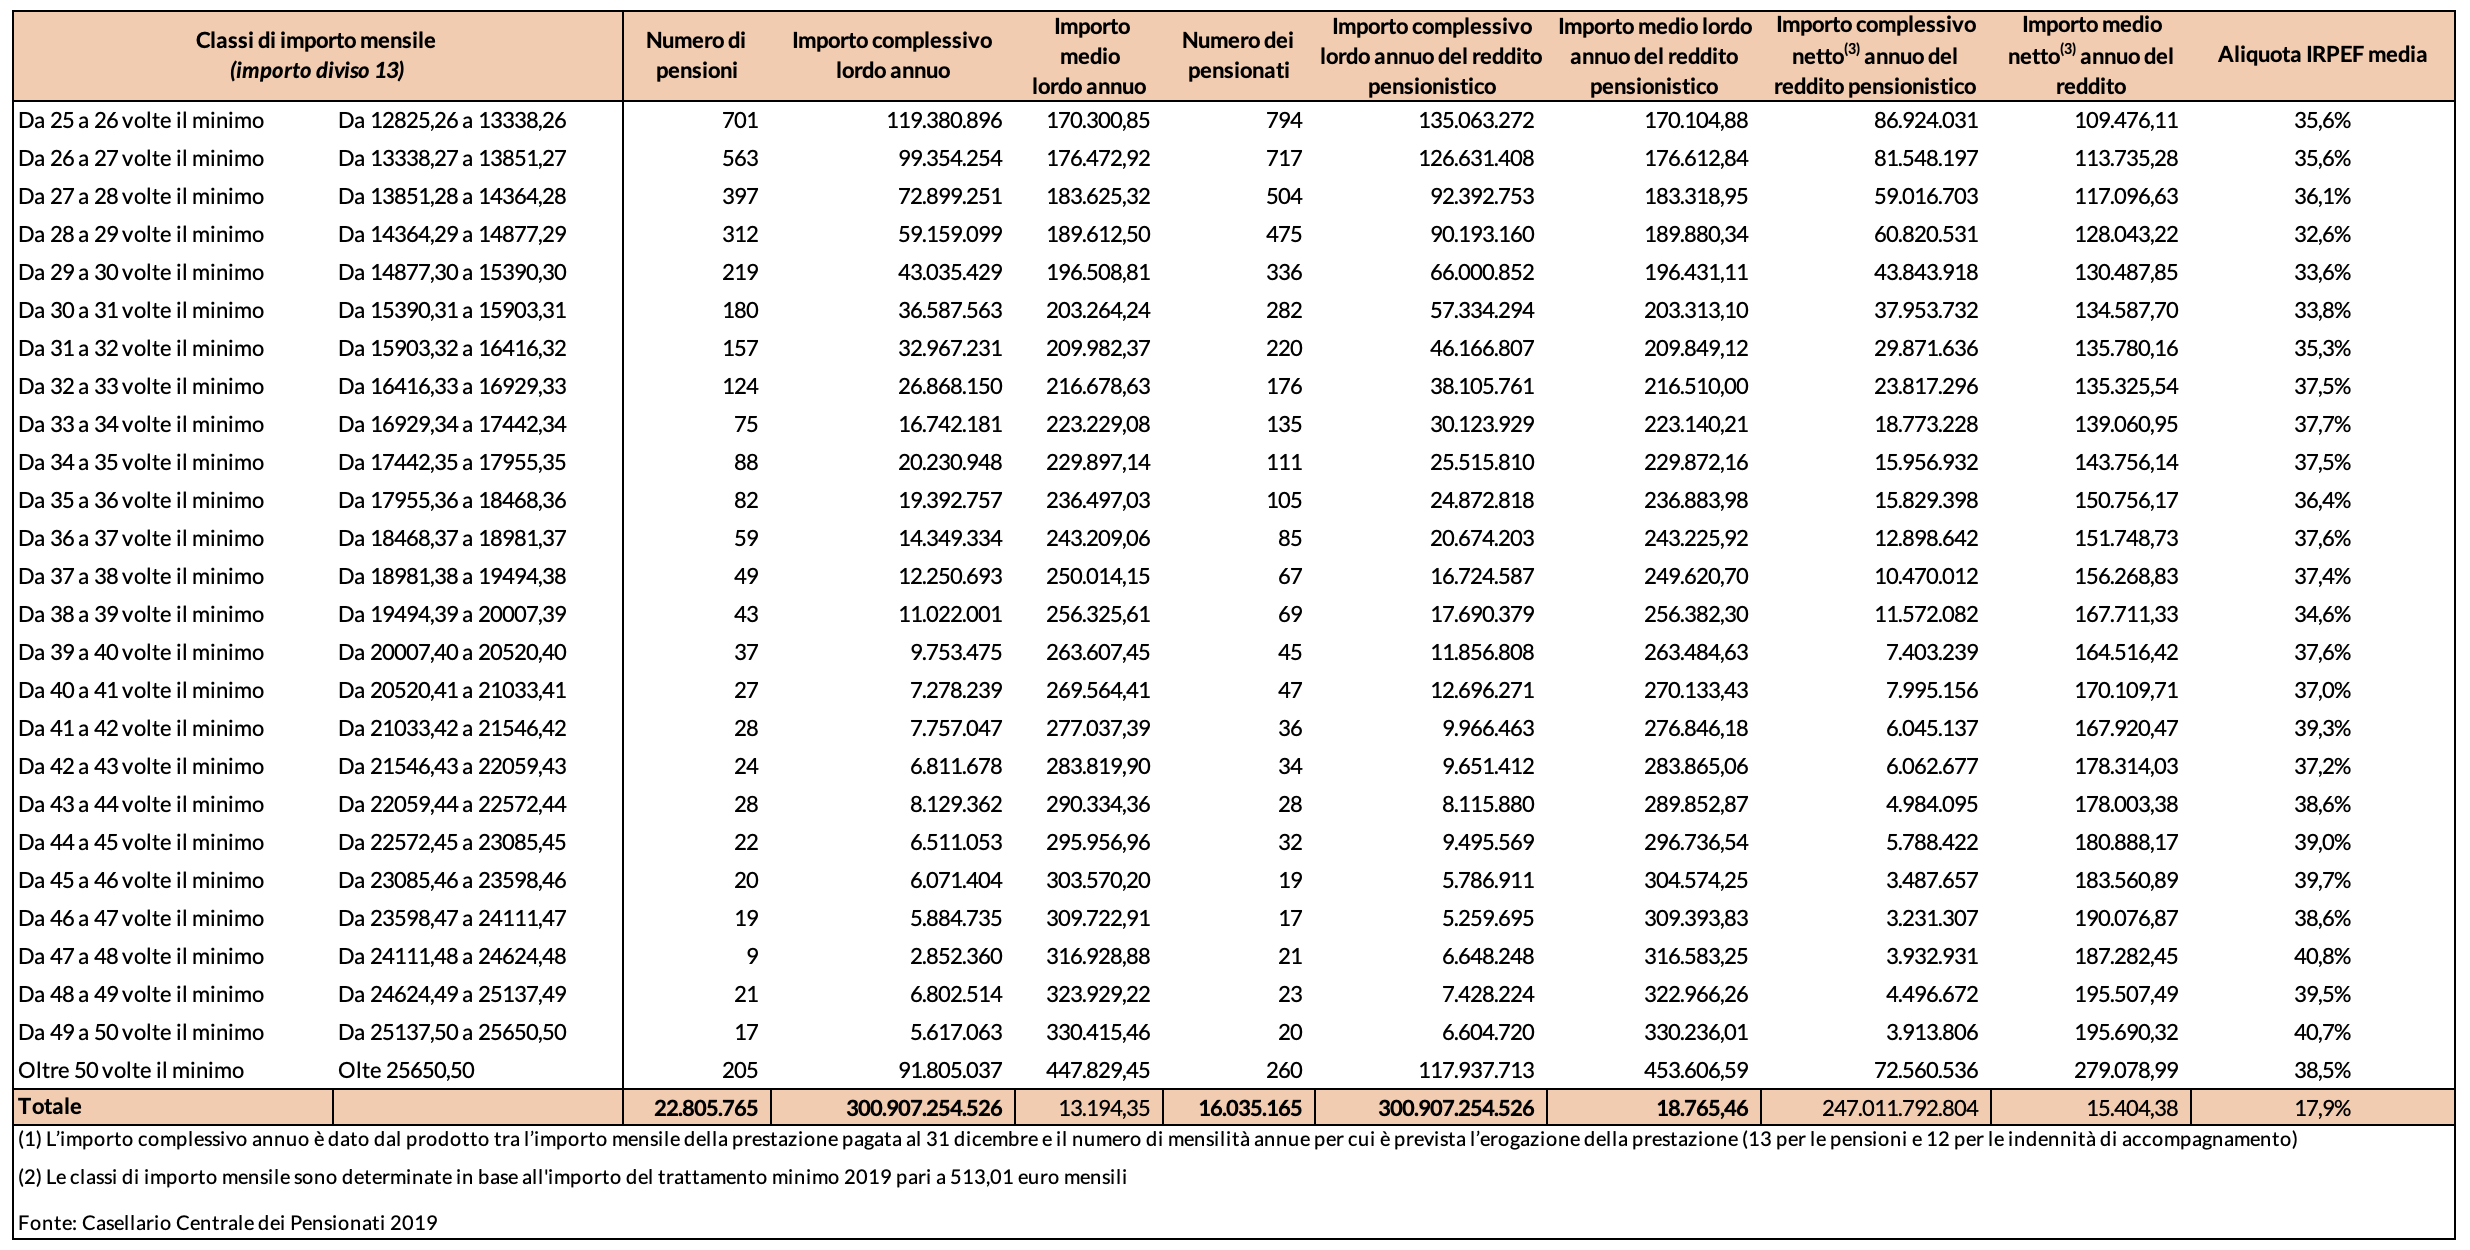 Tabella 1 Â– Numero pensioni e pensionati, importo complessivo lordo e netto annuo del reddito pensionistico per classi di reddito mensile - Anno 2019